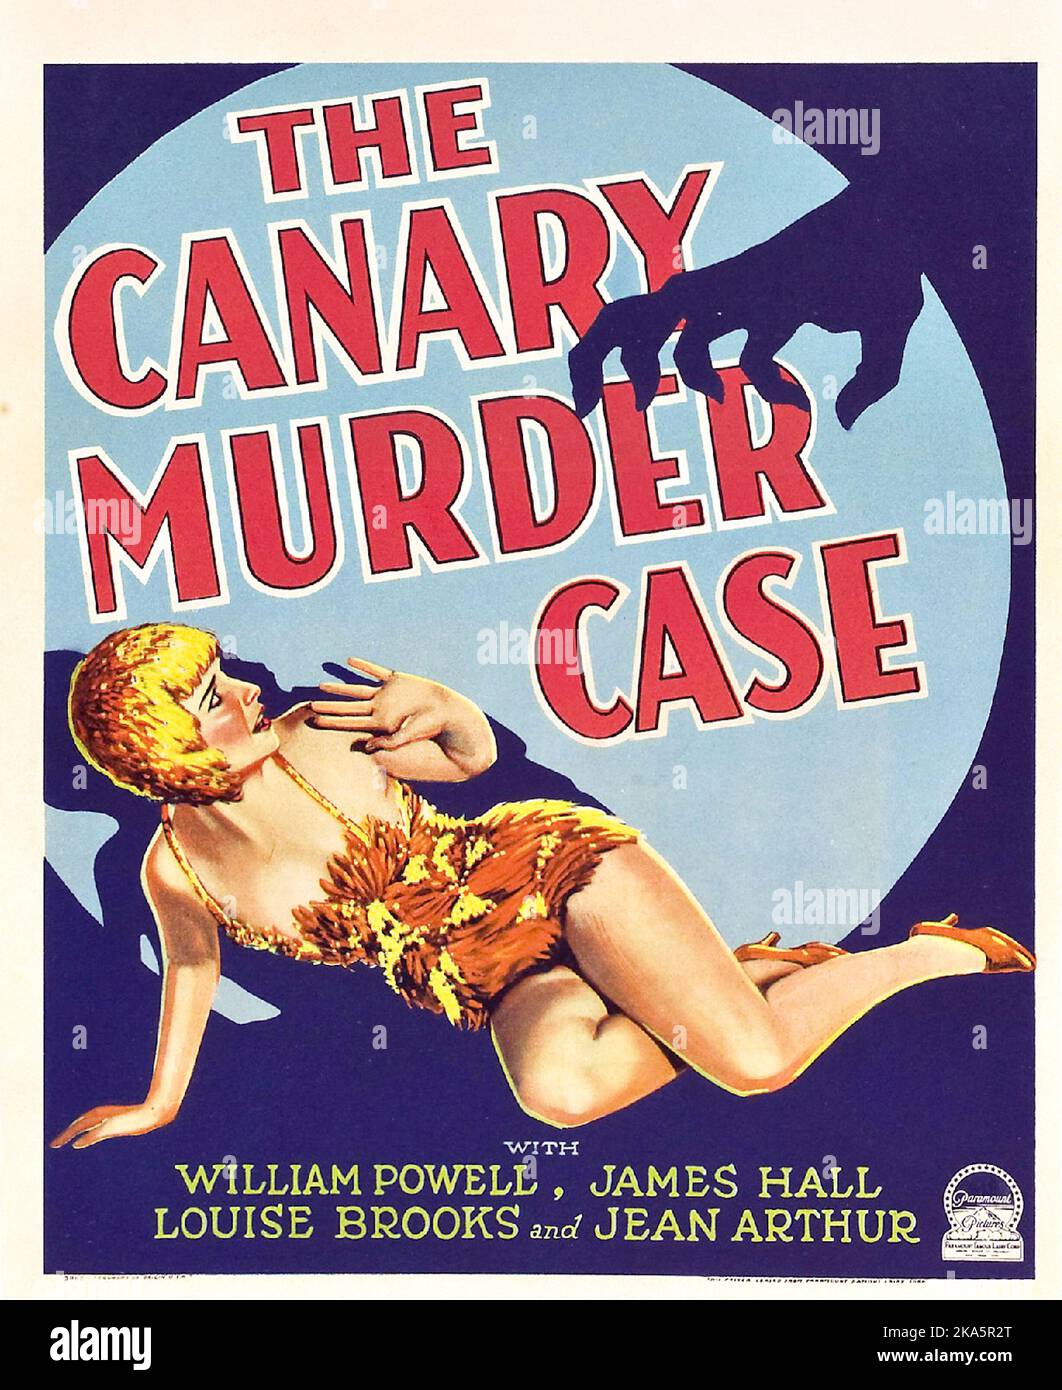 L'affaire de meurtre à canaris avec William Powell et James Hall - 1922 - la femme s'approche comme une main menaçante. Banque D'Images